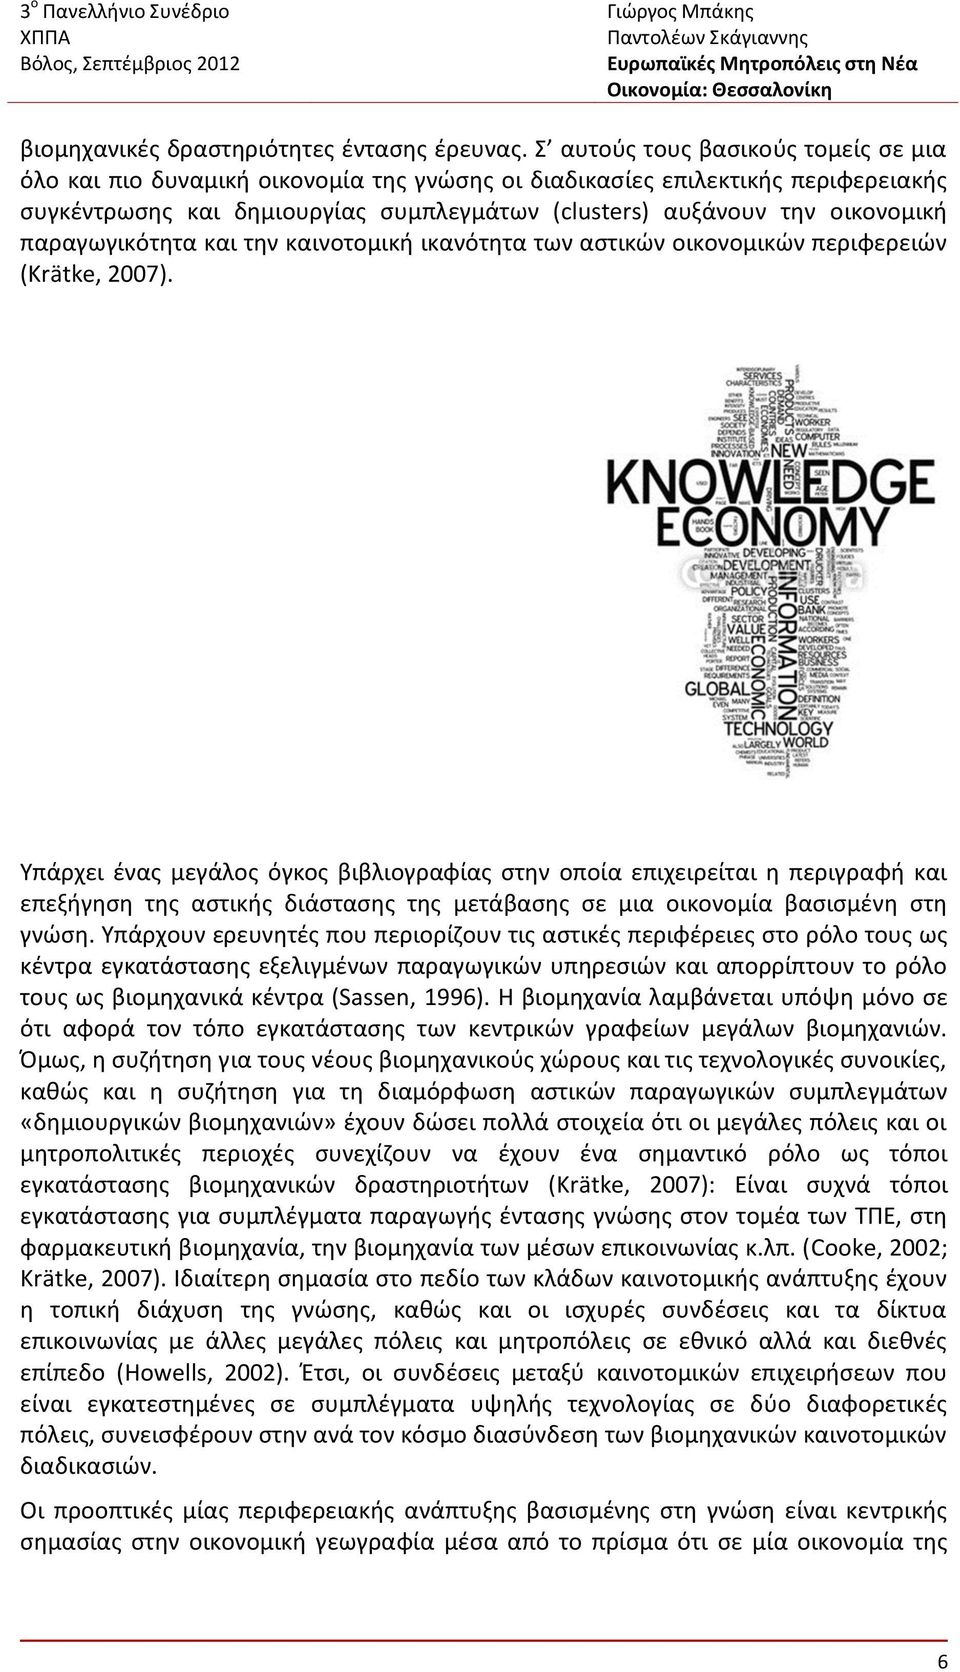 παραγωγικότητα και την καινοτομική ικανότητα των αστικών οικονομικών περιφερειών (Krätke, 2007).